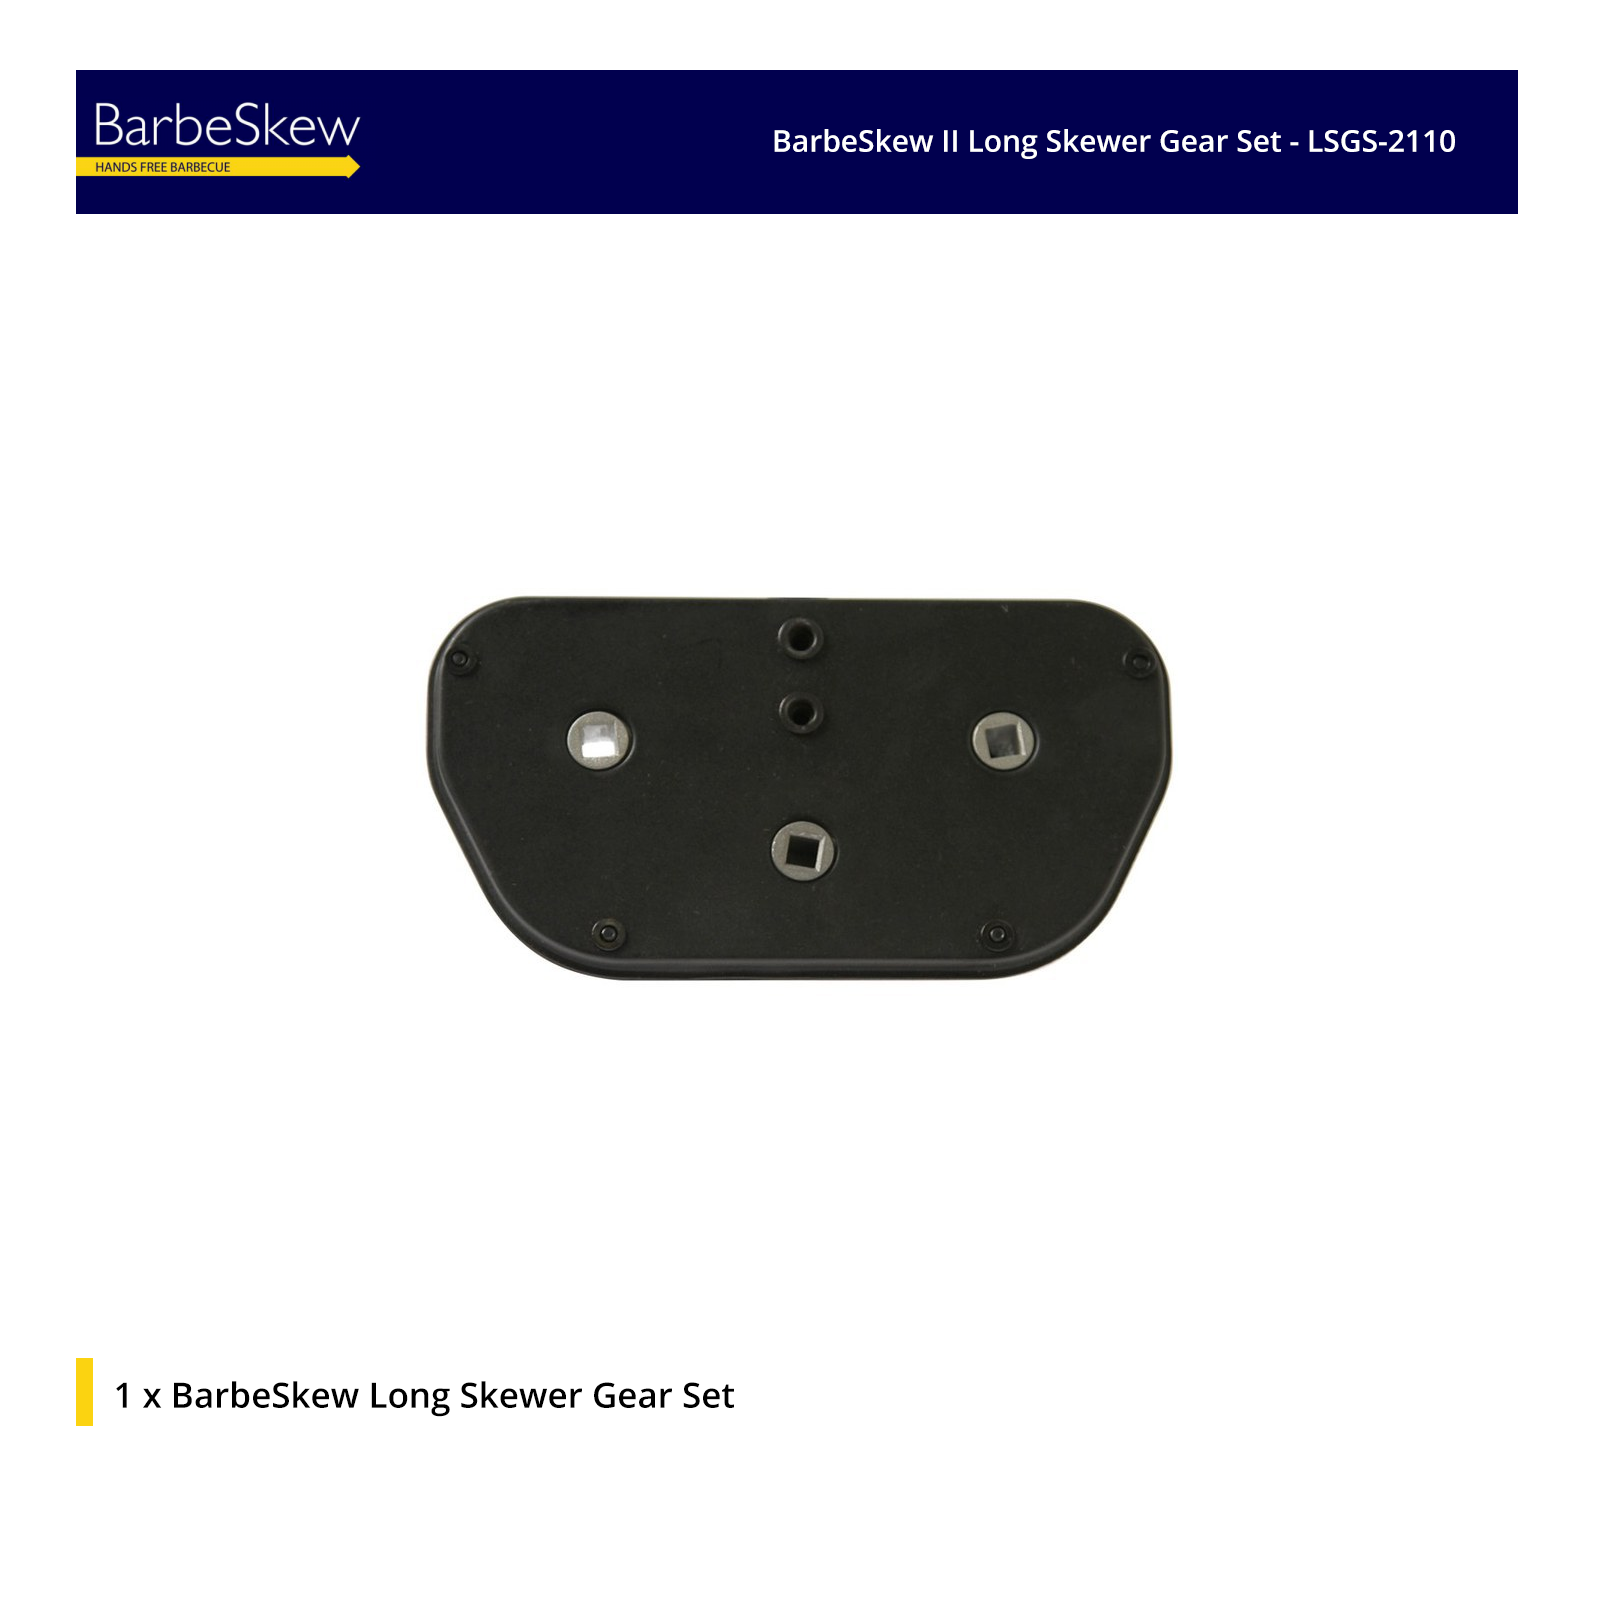 BarbeSkew II Long Skewer Gear Set - LSGS-2110